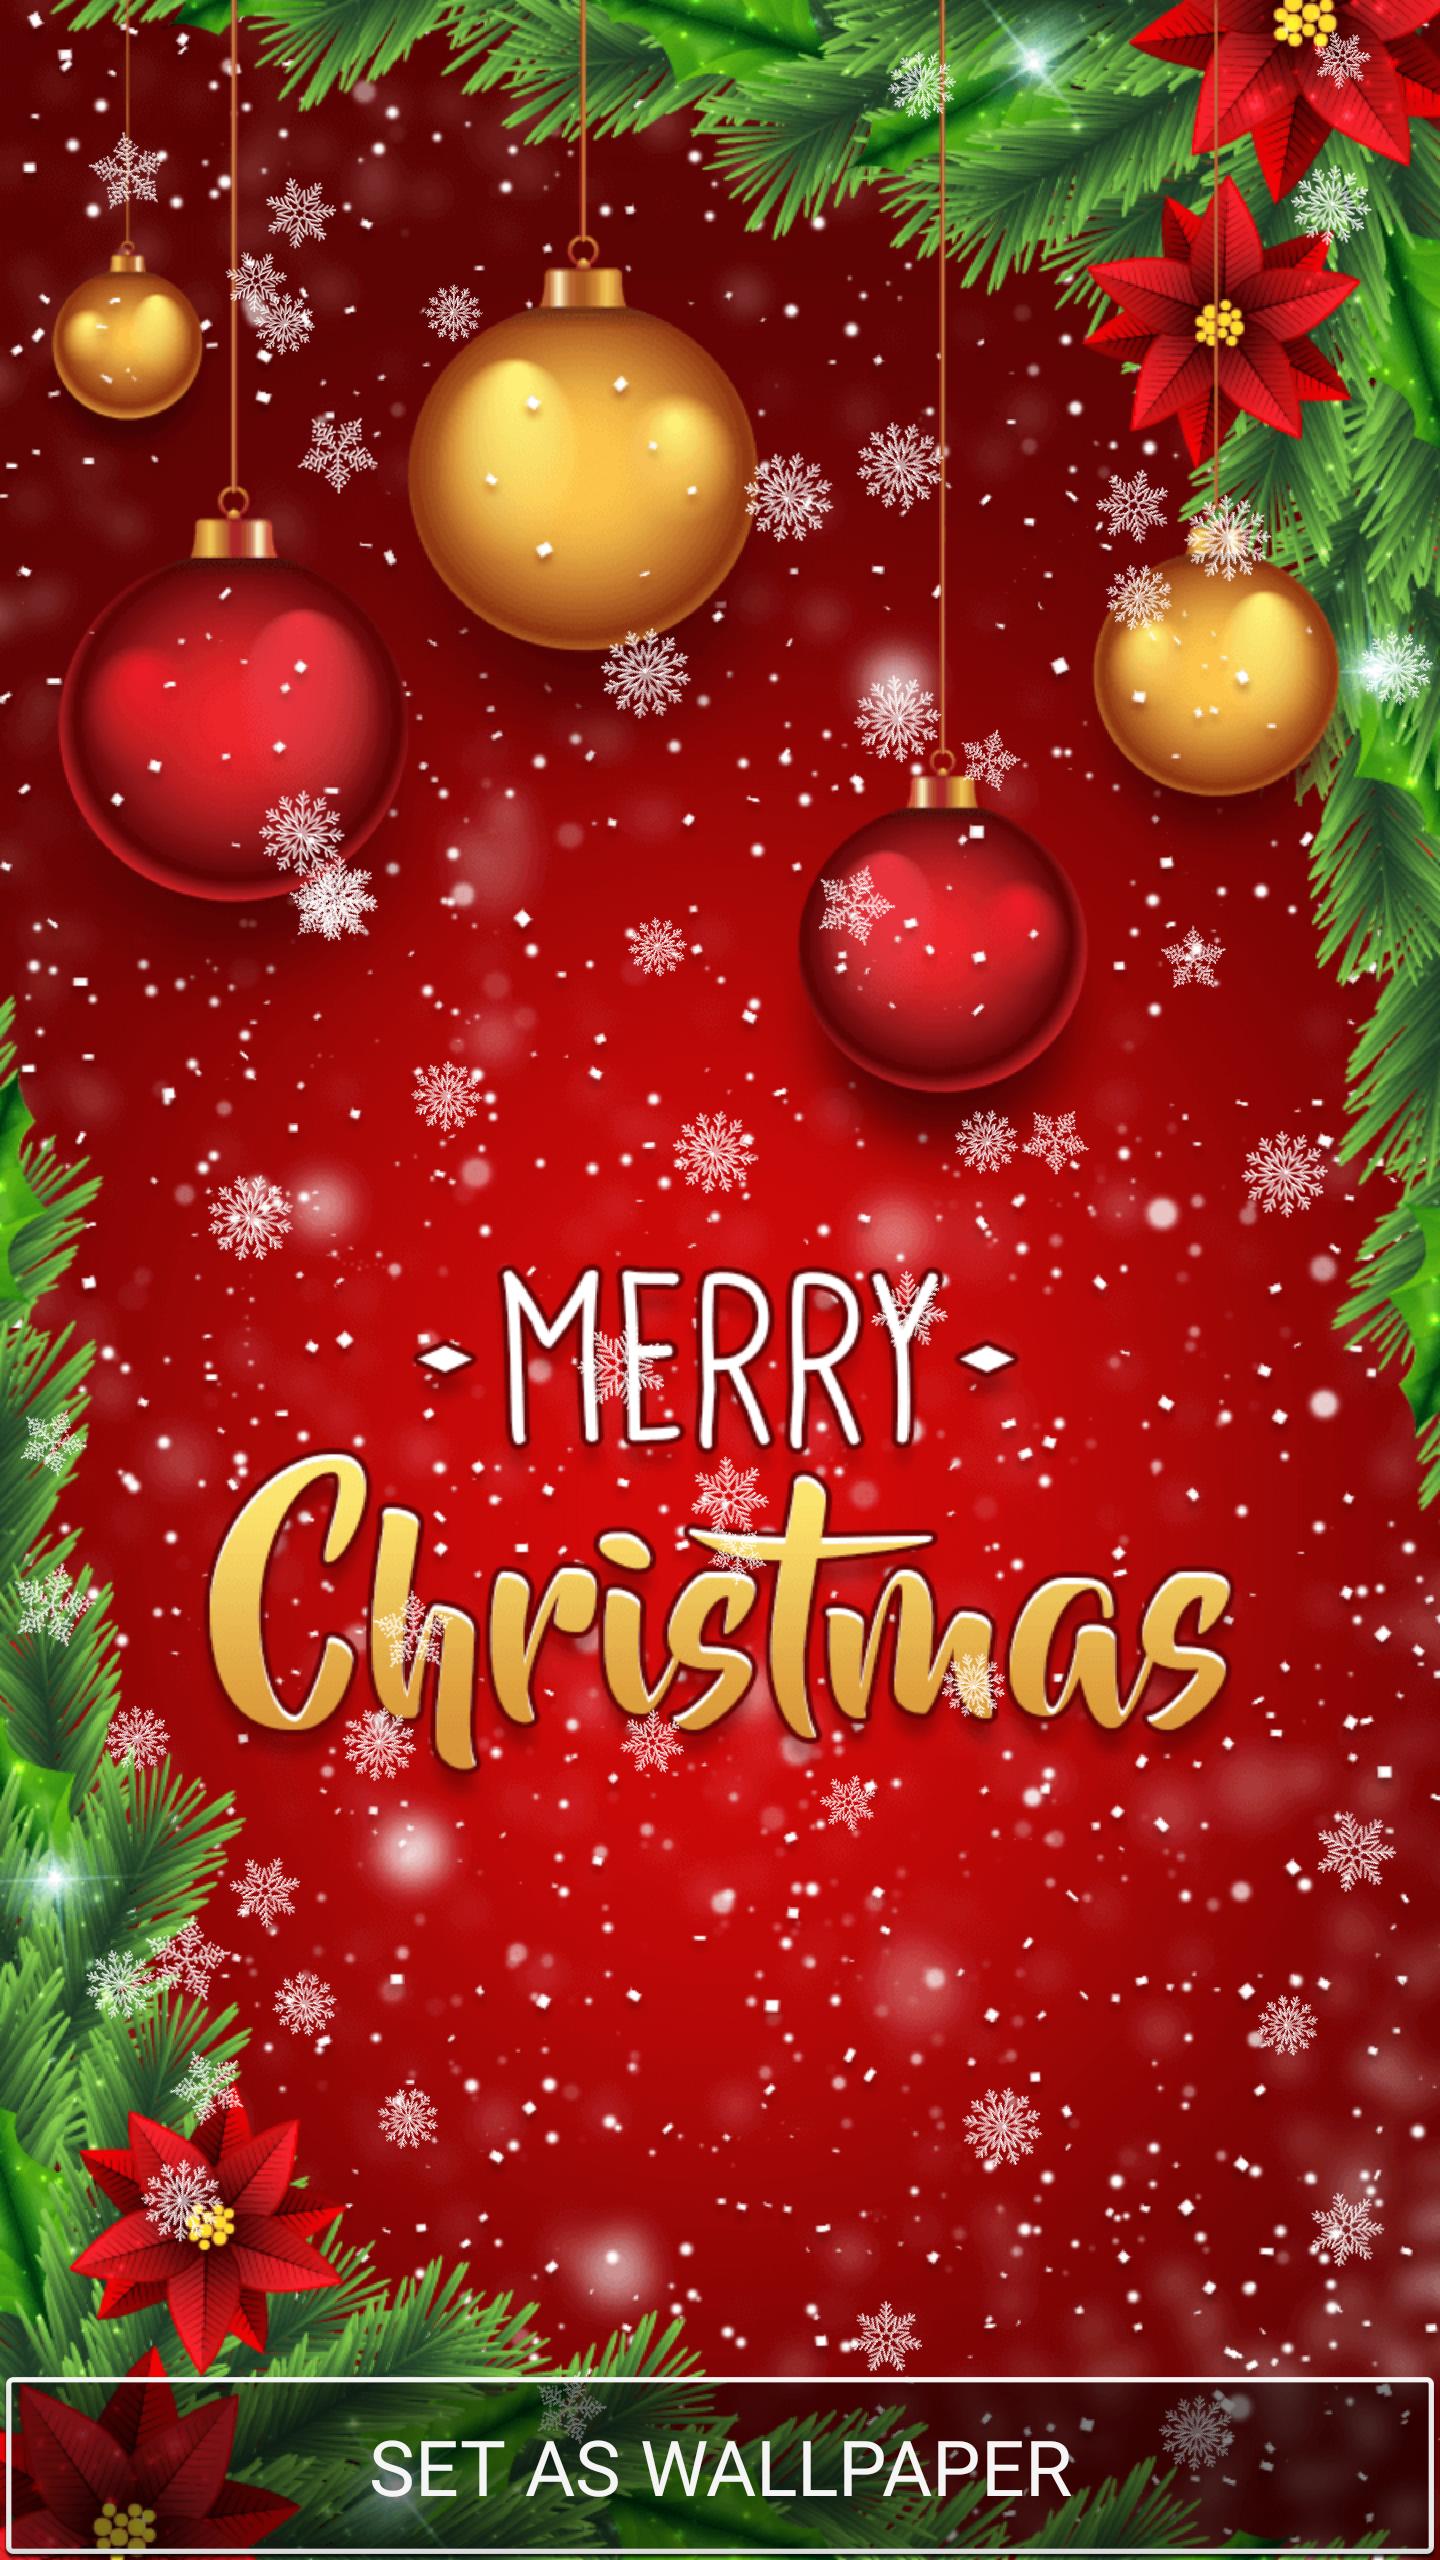 Sfondi Animati Gratis Di Natale.Sfondi Animati Natale Gratis For Android Apk Download